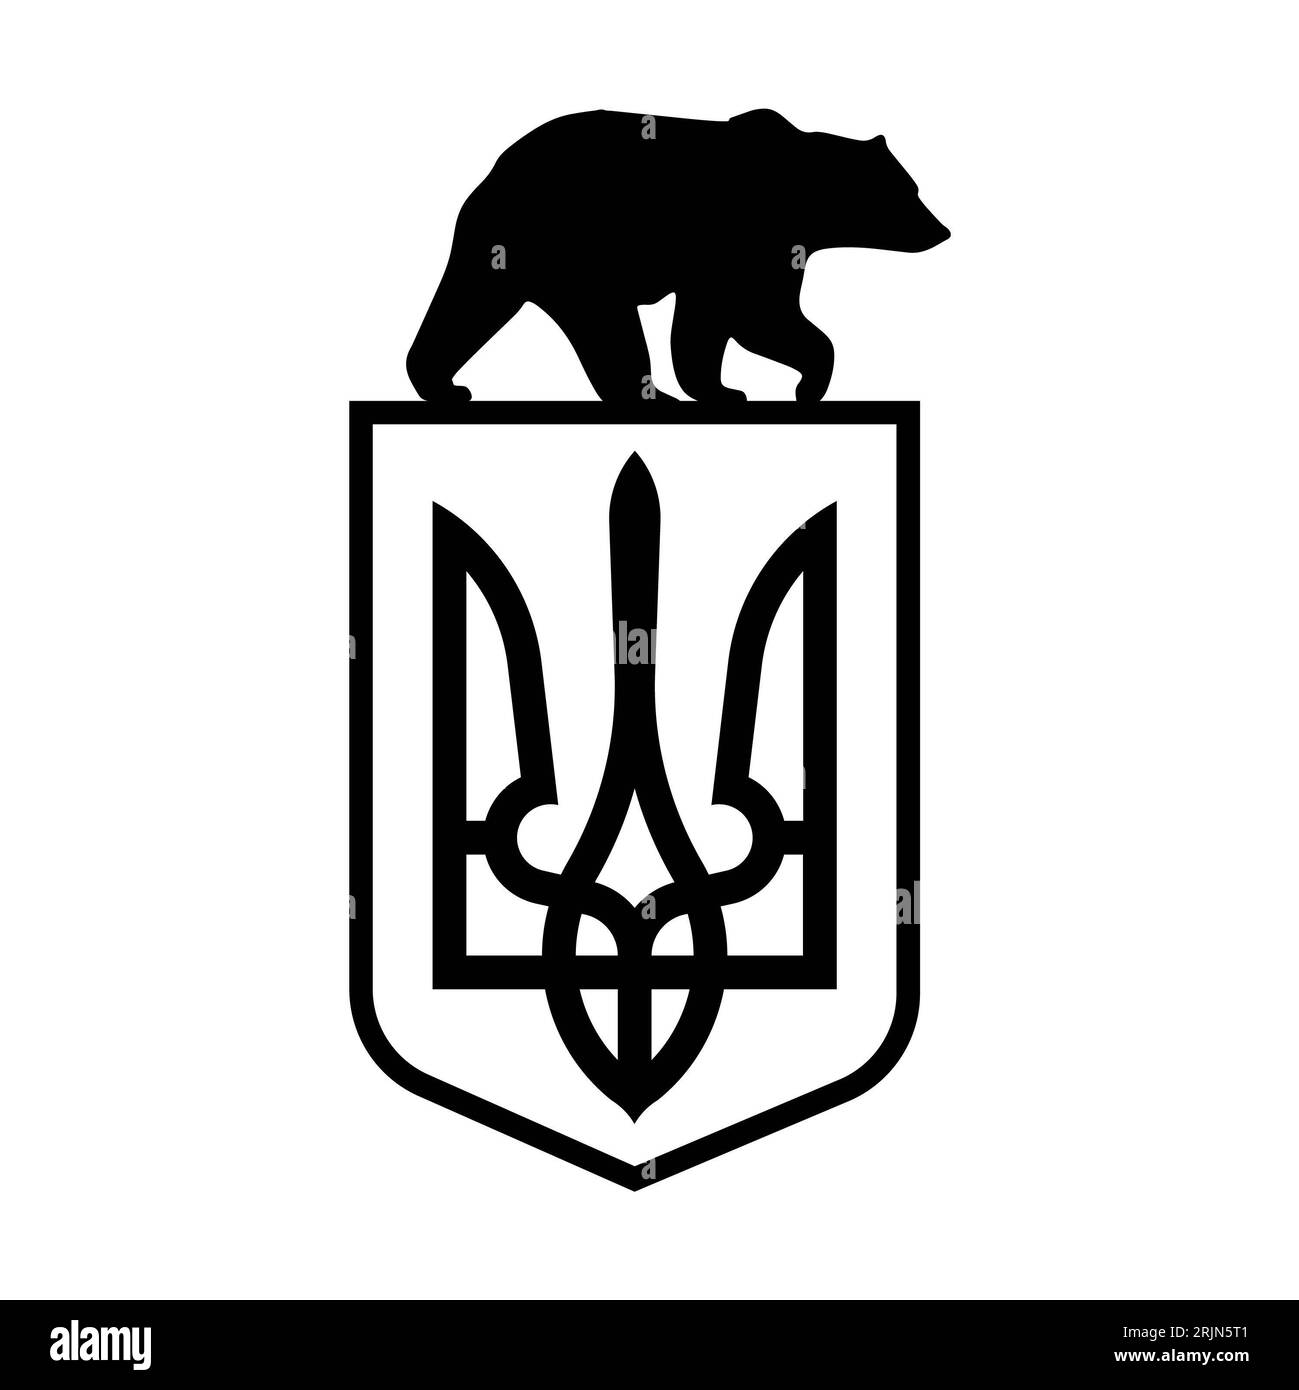 Ukrainian bear with Ukraine Trindent Coat of Arms symbol on white background. Isolated illustration. Stock Photo